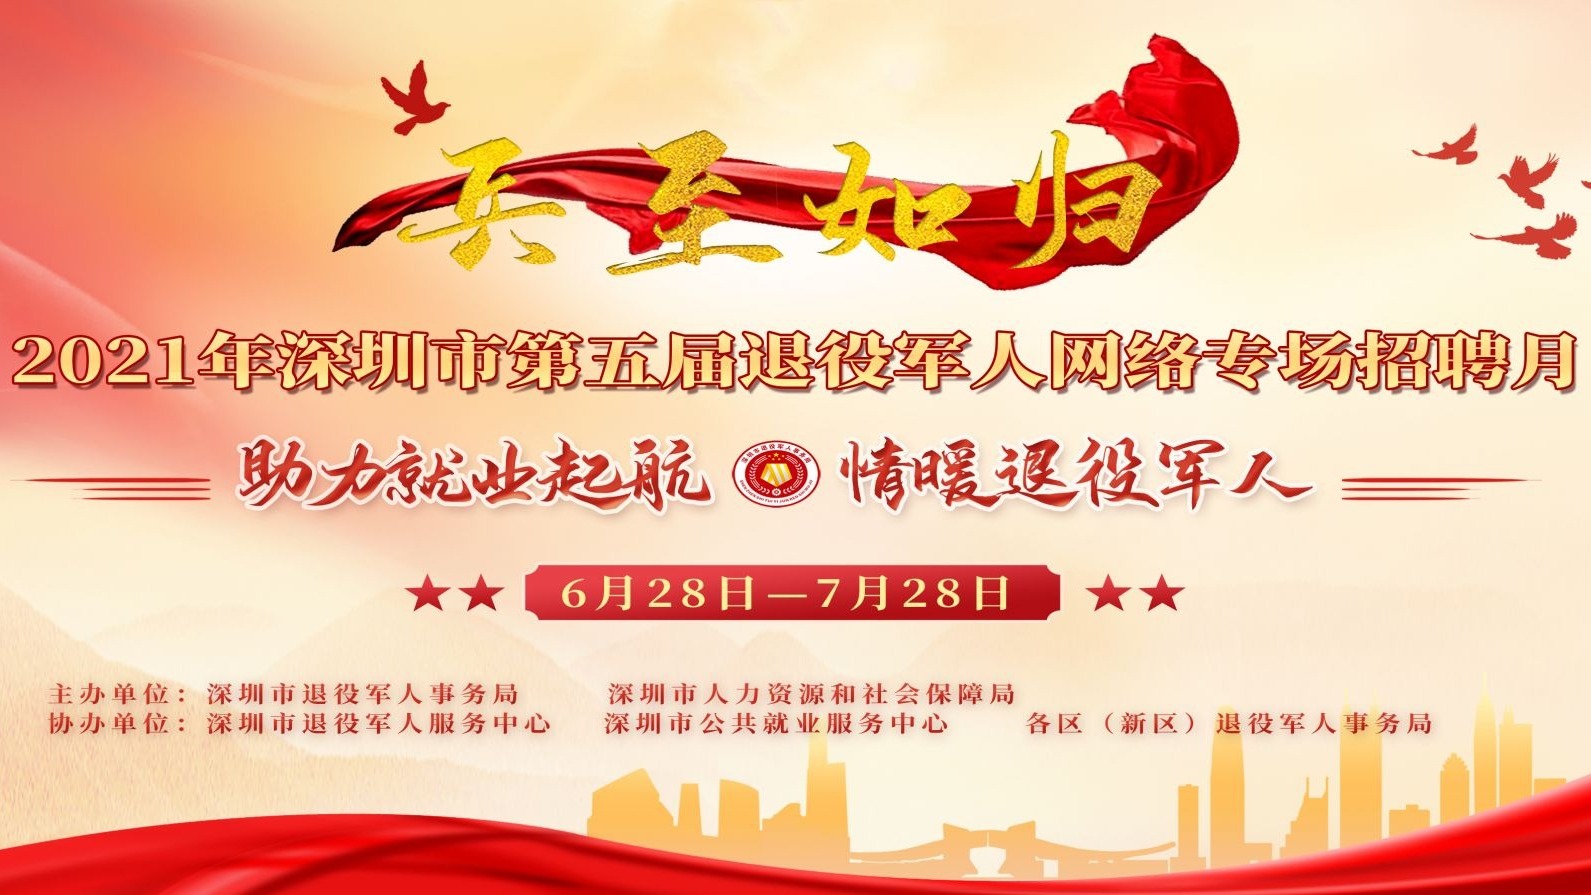 深圳市举办第五届“兵至如归”退役军人网络招聘月活动